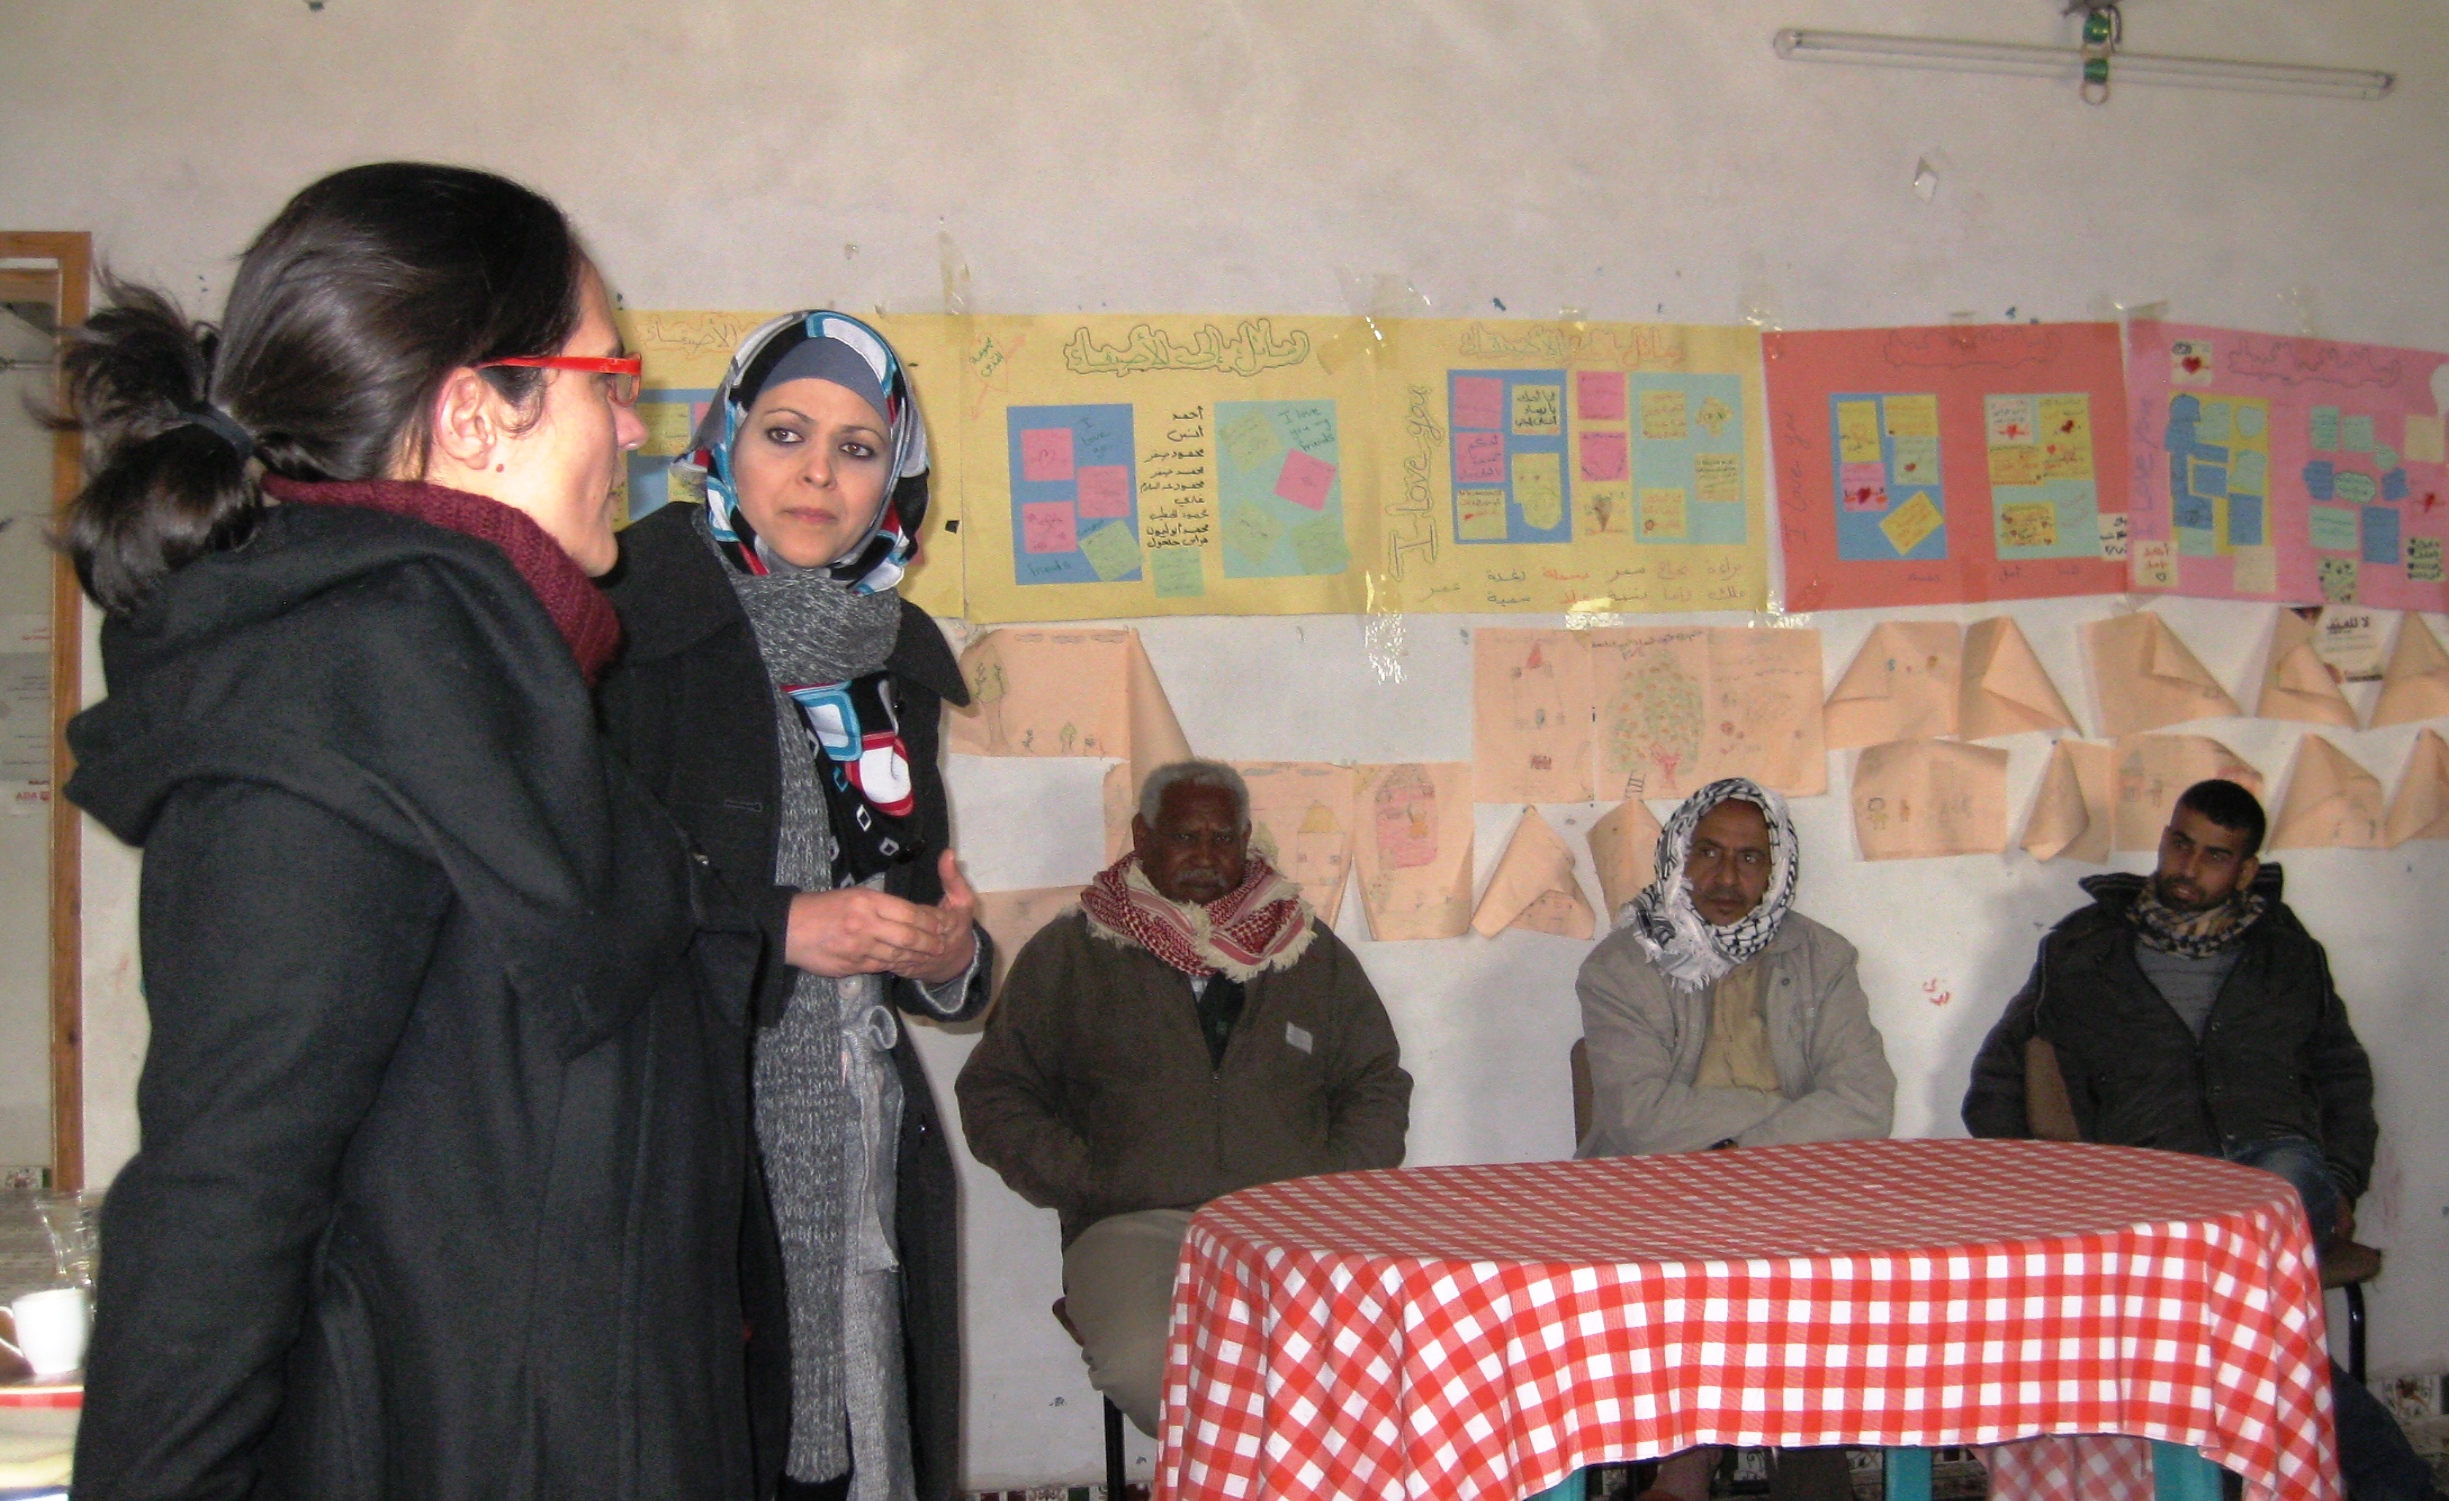 El derecho al trabajo de las mujeres rurales en la Franja. Integrando el EGyBDH en un contexto de mundo árabe y ayuda humanitaria